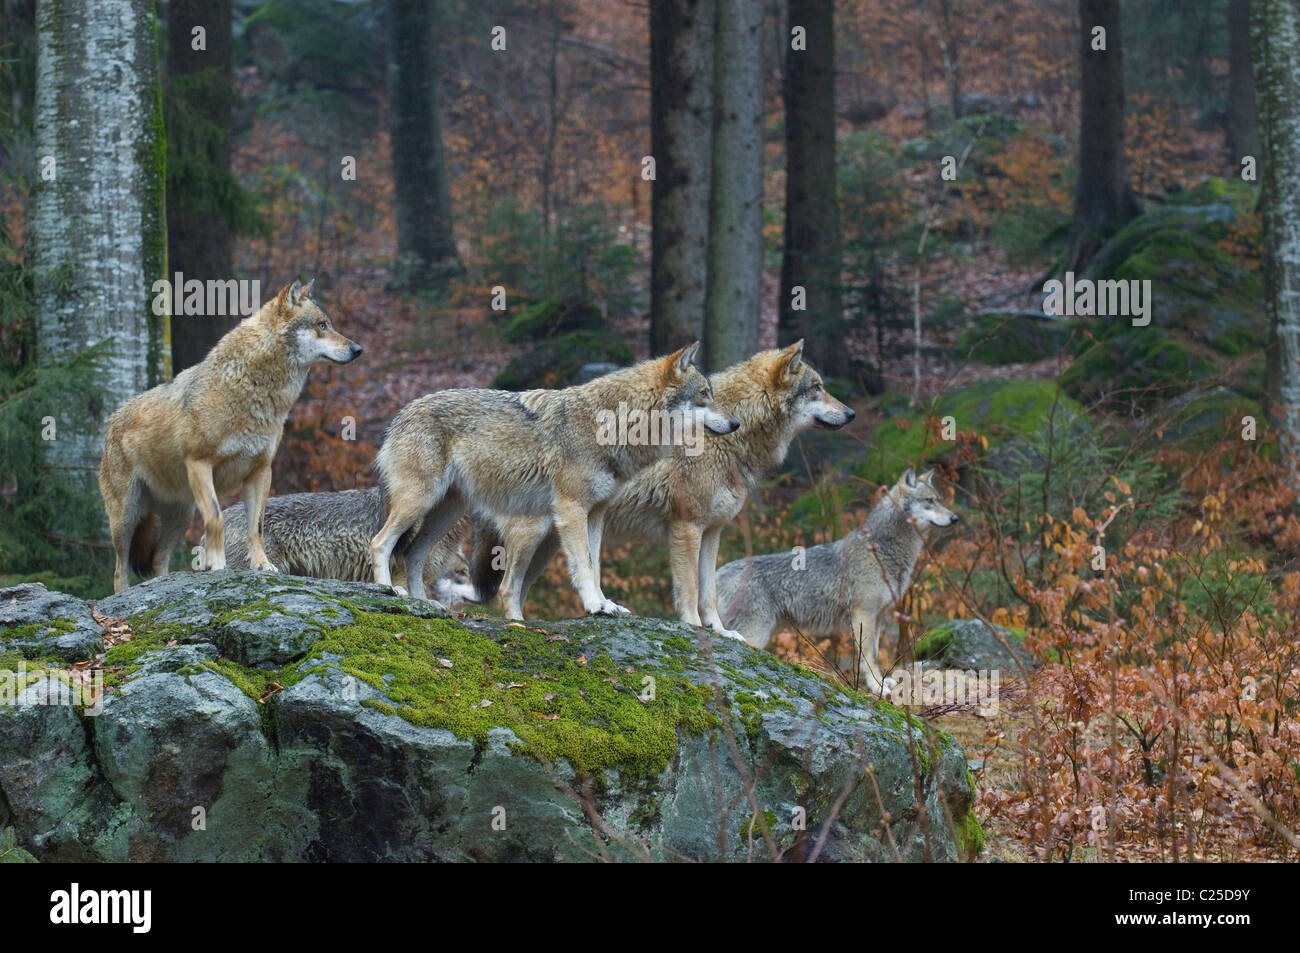 European wolf (Canis lupus), Parc national de Bavière, Allemagne Banque D'Images